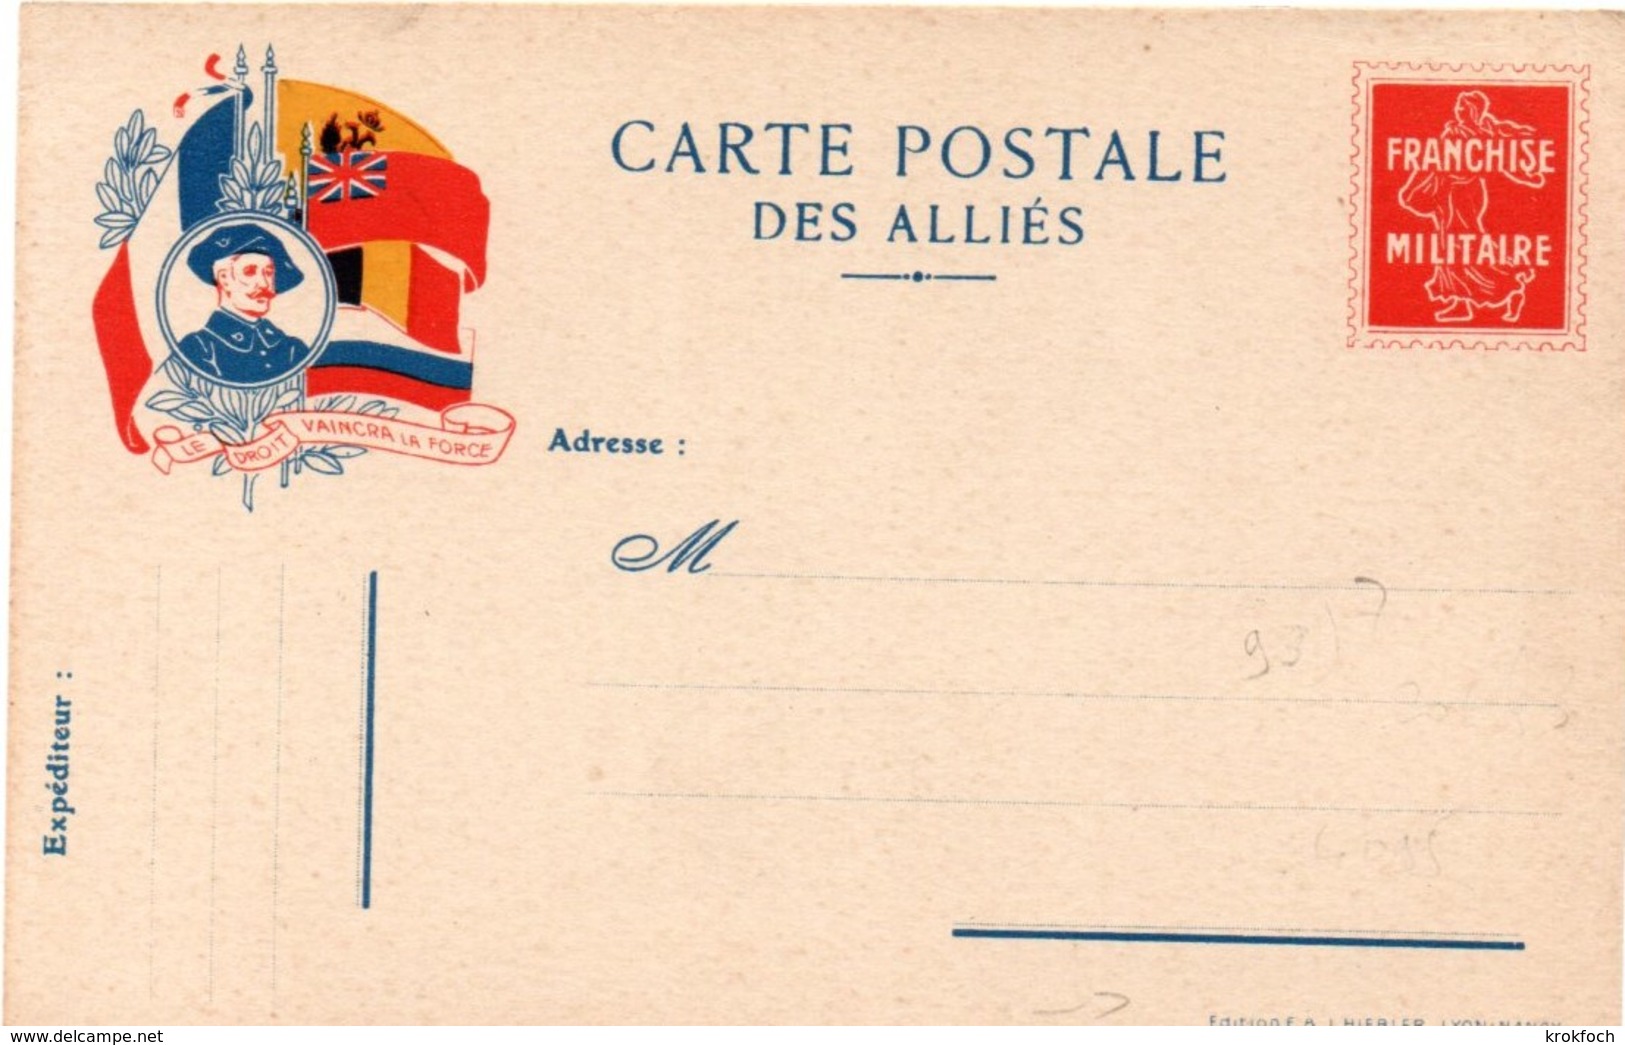 Carte Postale Des Alliés - Franchise Militaire Avec Pseudo Semeuse - Chasseur Alpin - édit Hiebler Lyon Nancy - Lettres & Documents